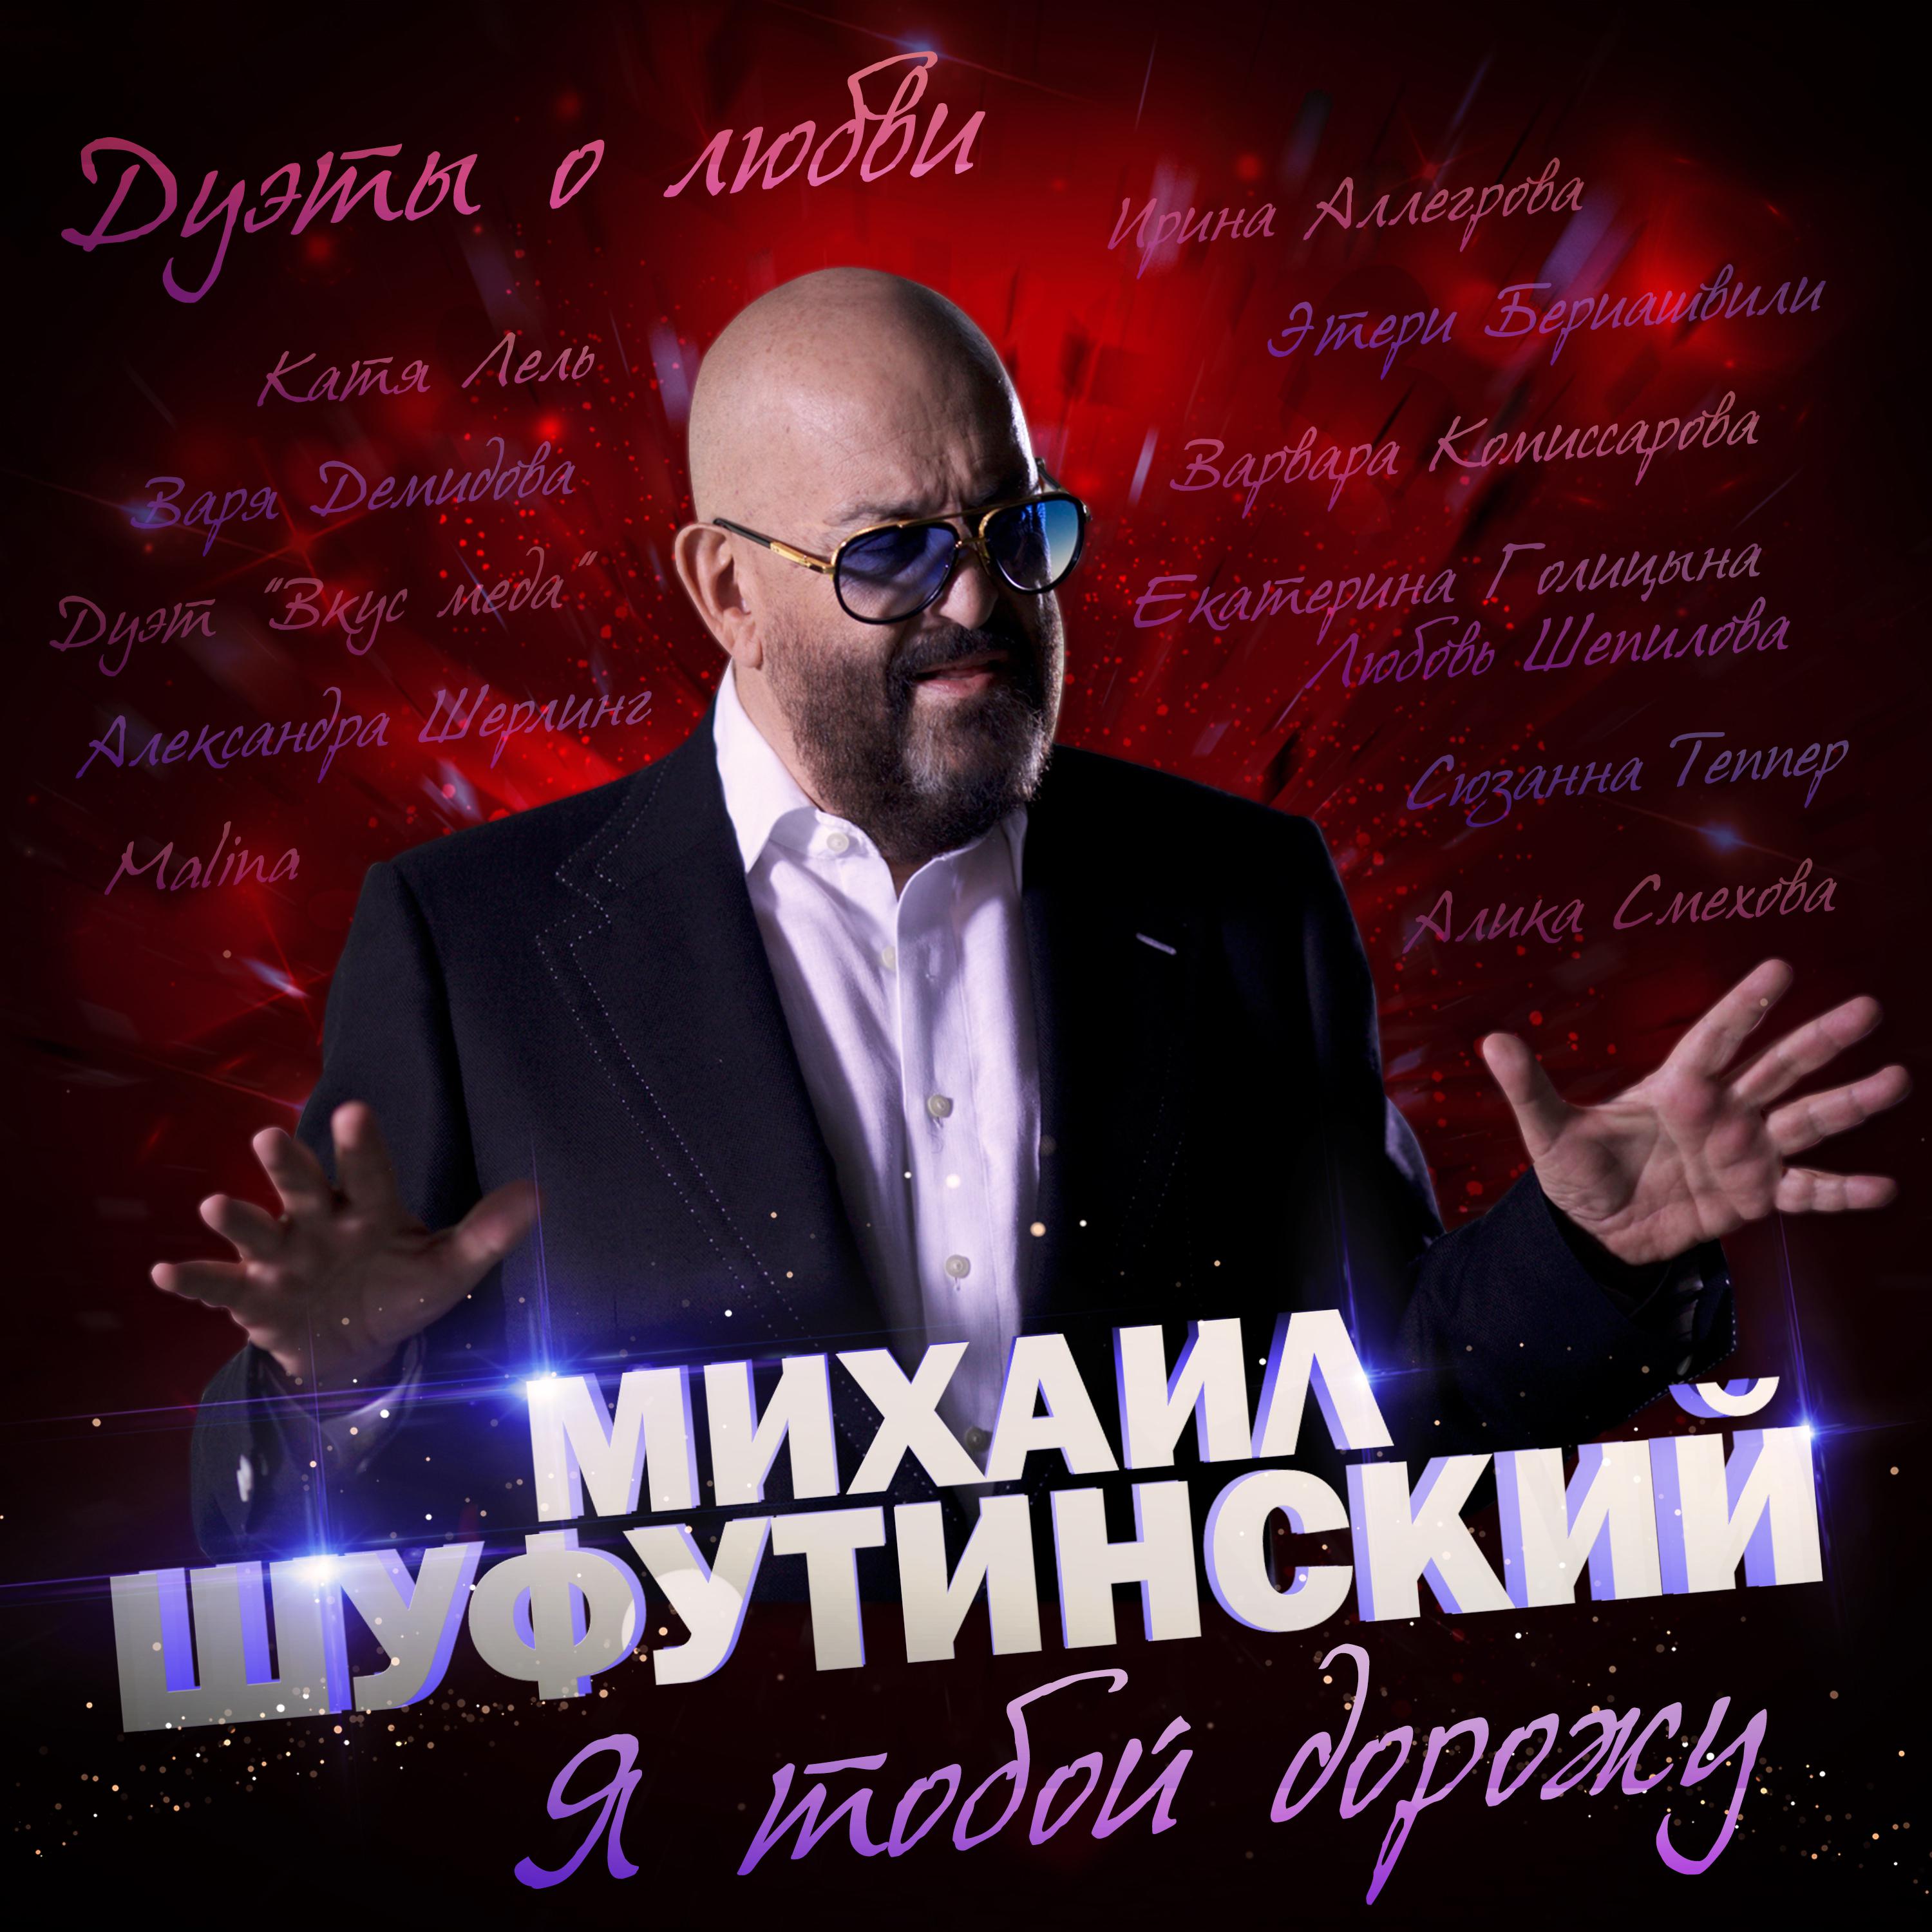 Альбом Я тобой дорожу - Михаил Шуфутинский - слушать все треки онлайн на  Zvuk.com